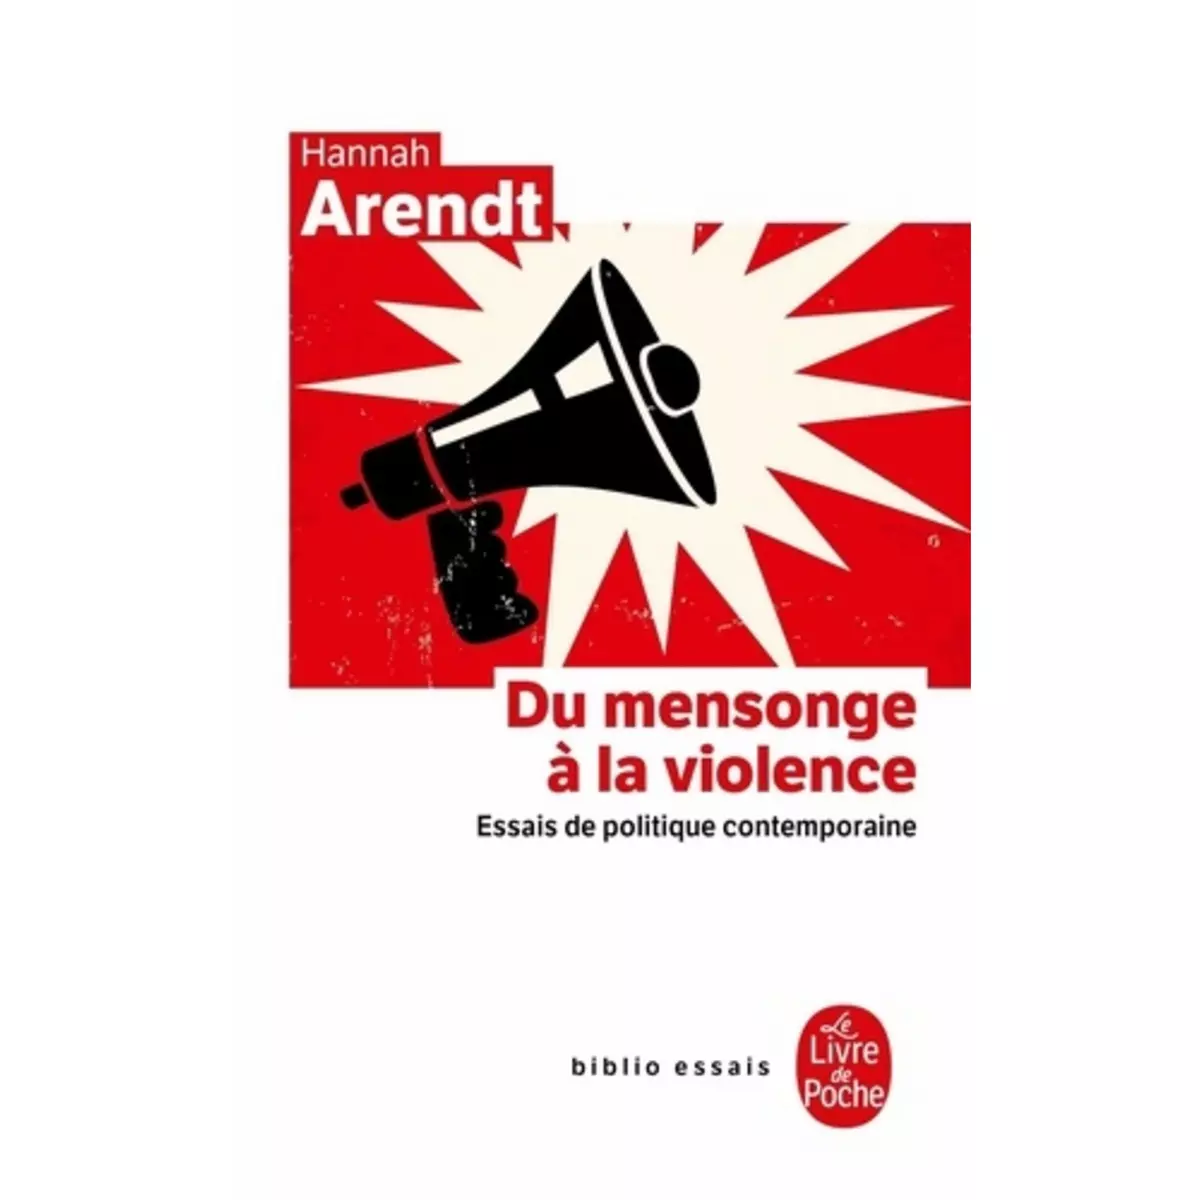  DU MENSONGE A LA VIOLENCE. ESSAIS DE POLITIQUE CONTEMPORAINE, Arendt Hannah